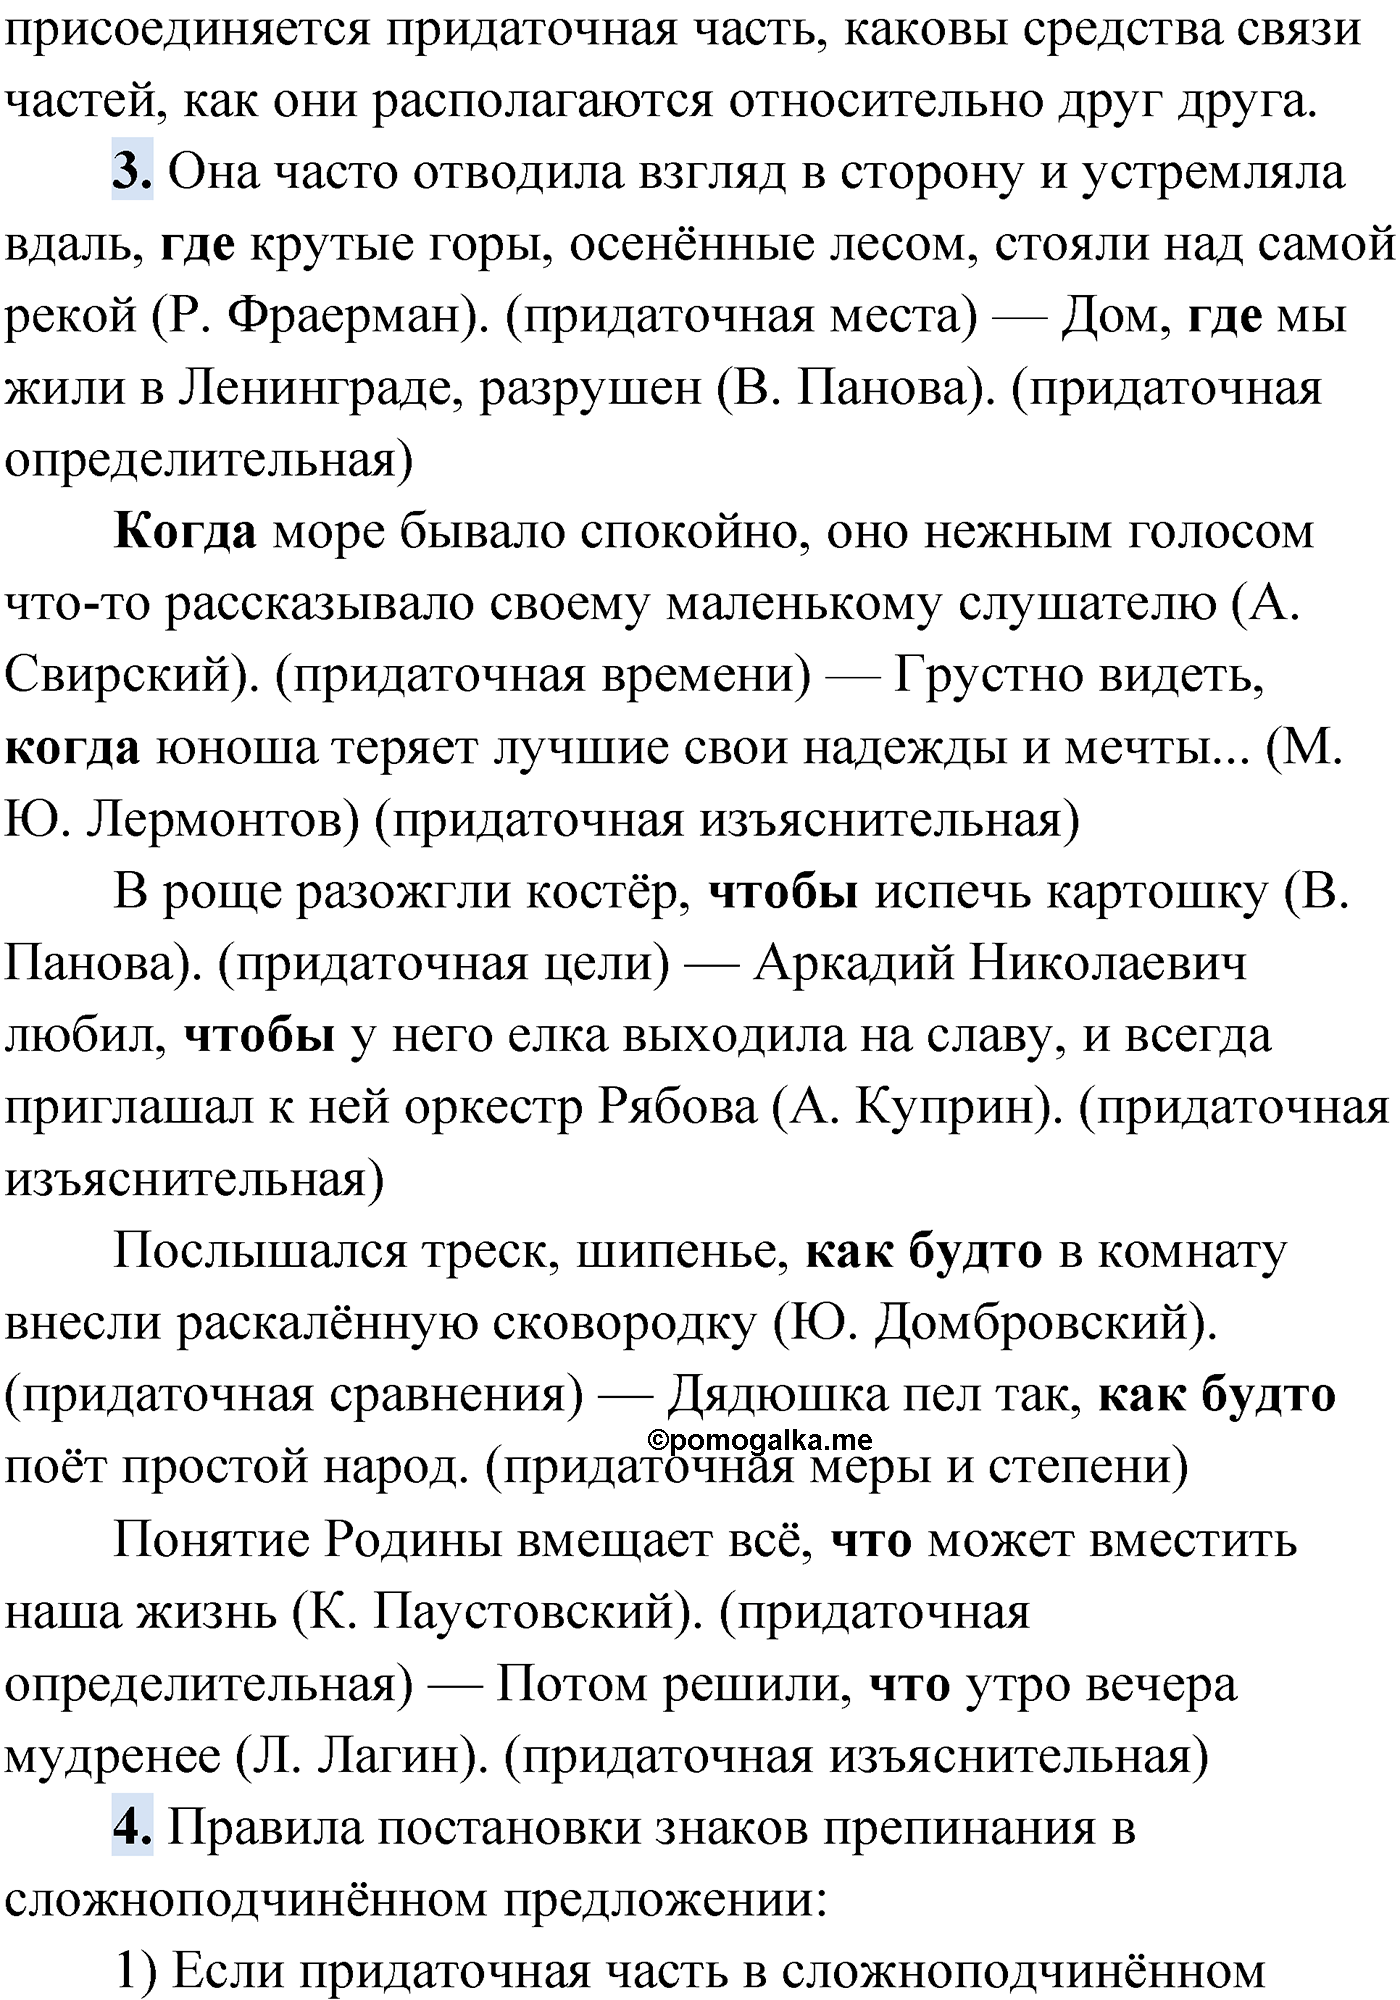 Проверь себя, Страница 129 русский язык 9 класс Мурина 2019 год